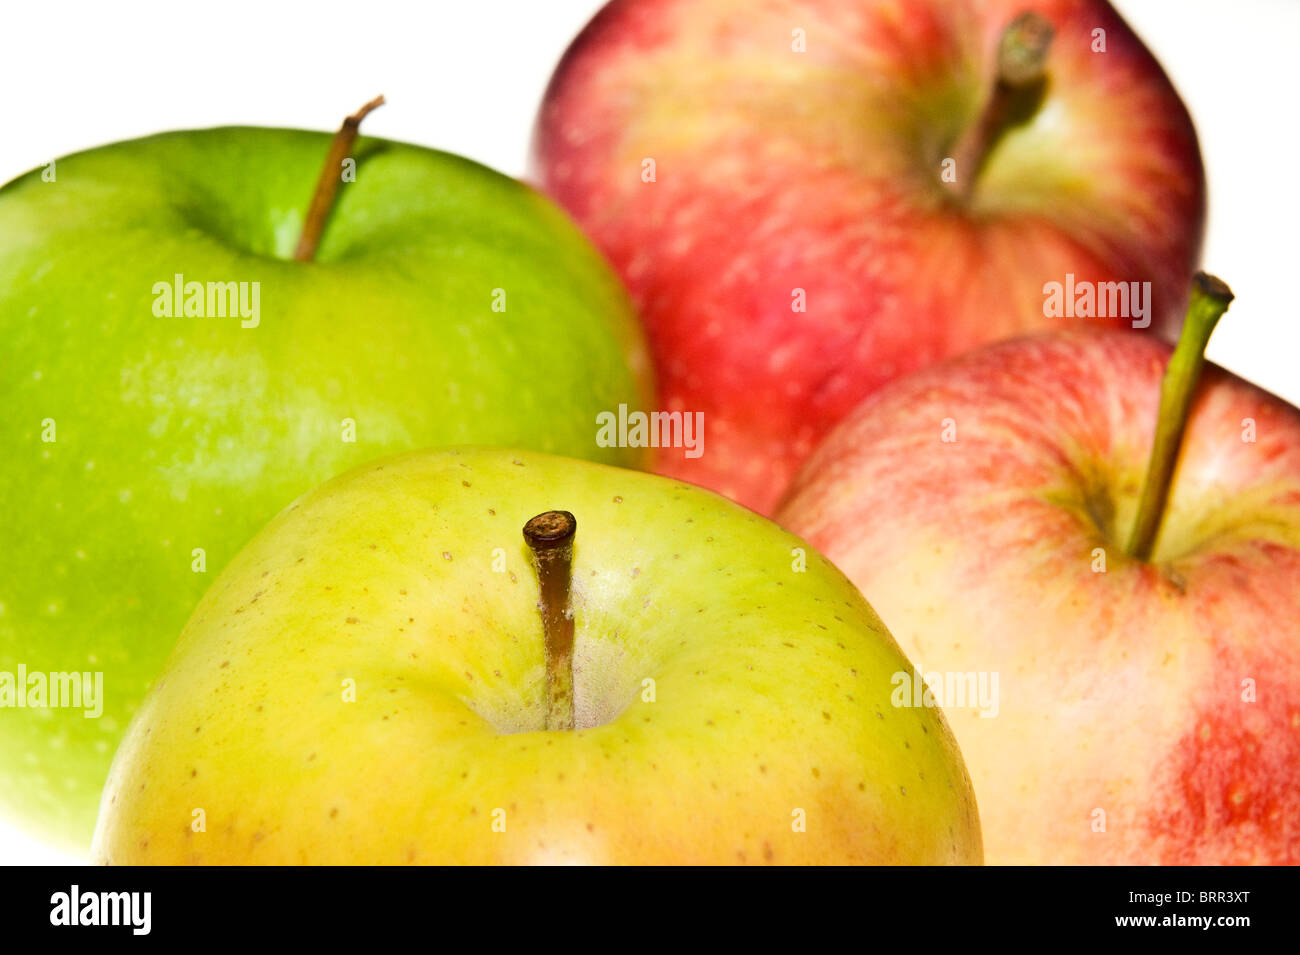 Foto de estudio de cuatro variedades de manzanas Foto de stock